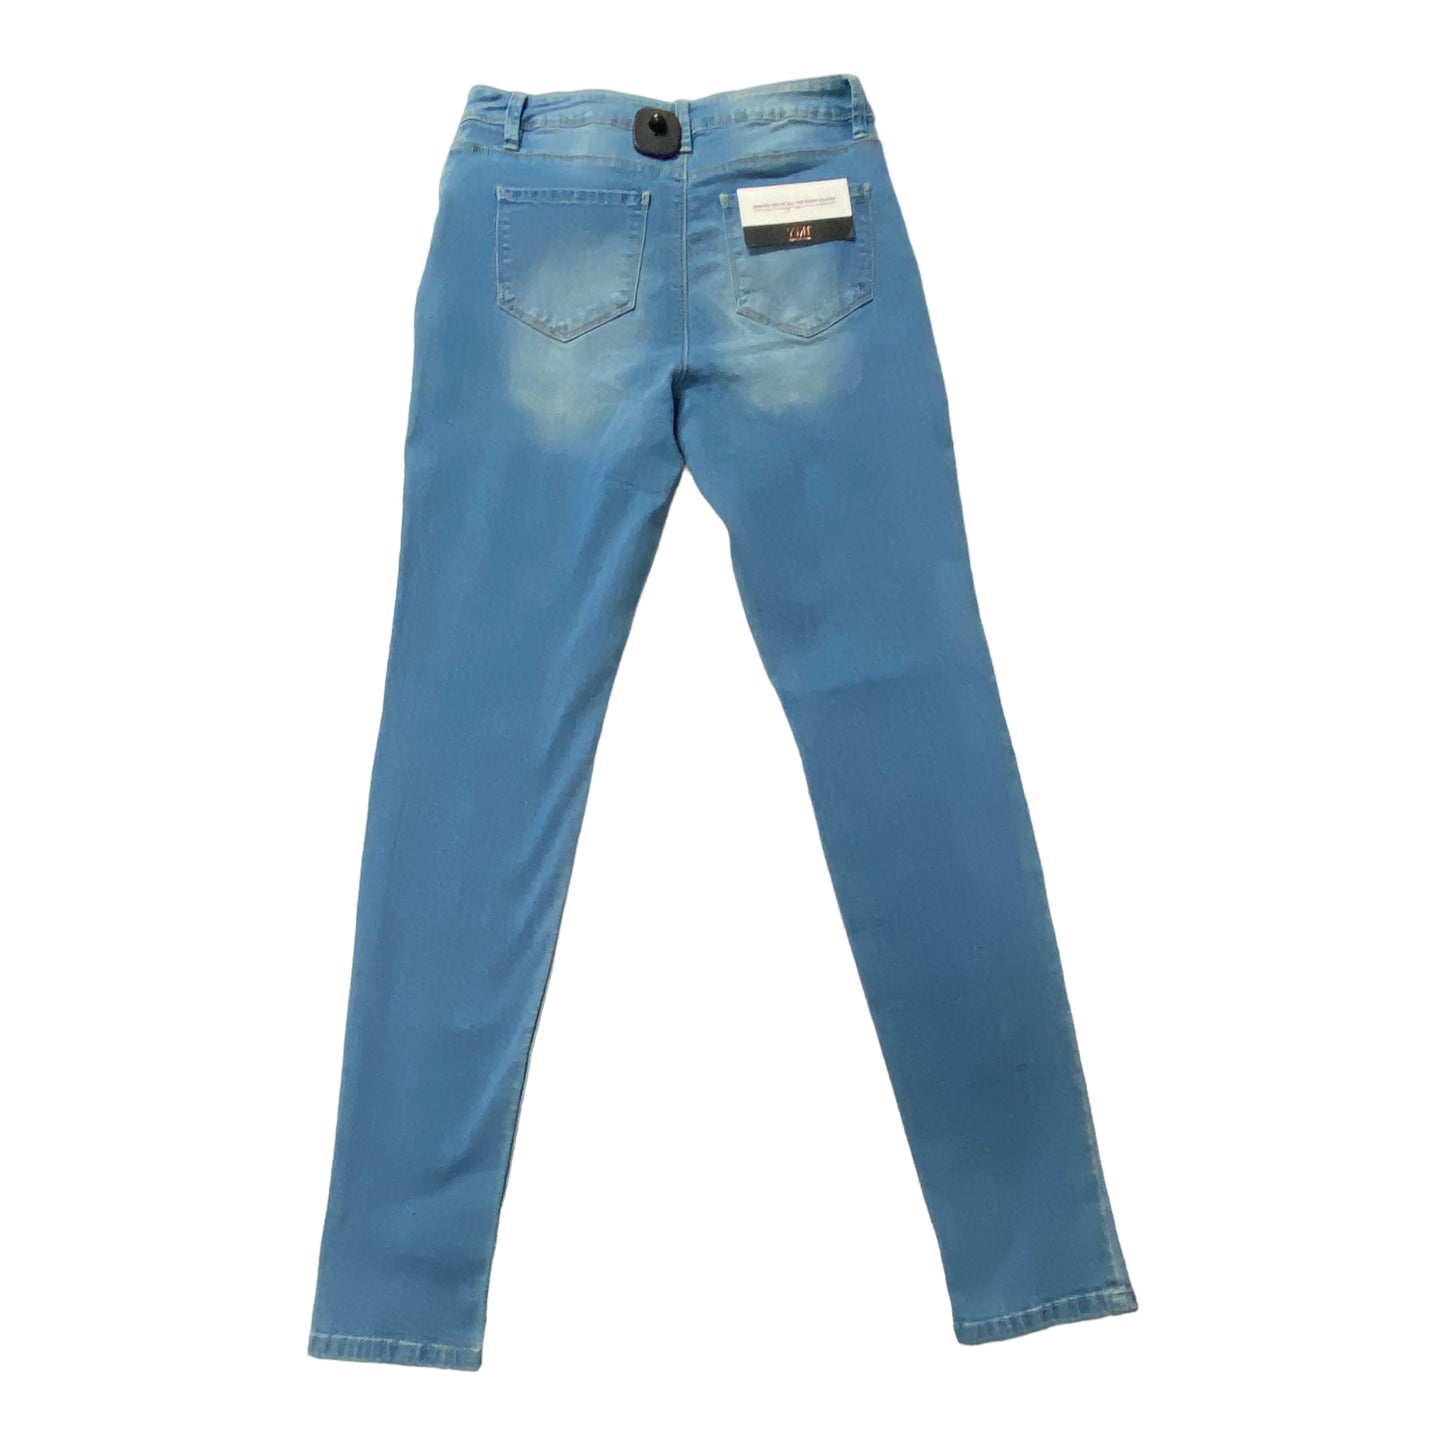 Blue Denim Jeans Skinny Ymi, Size 8